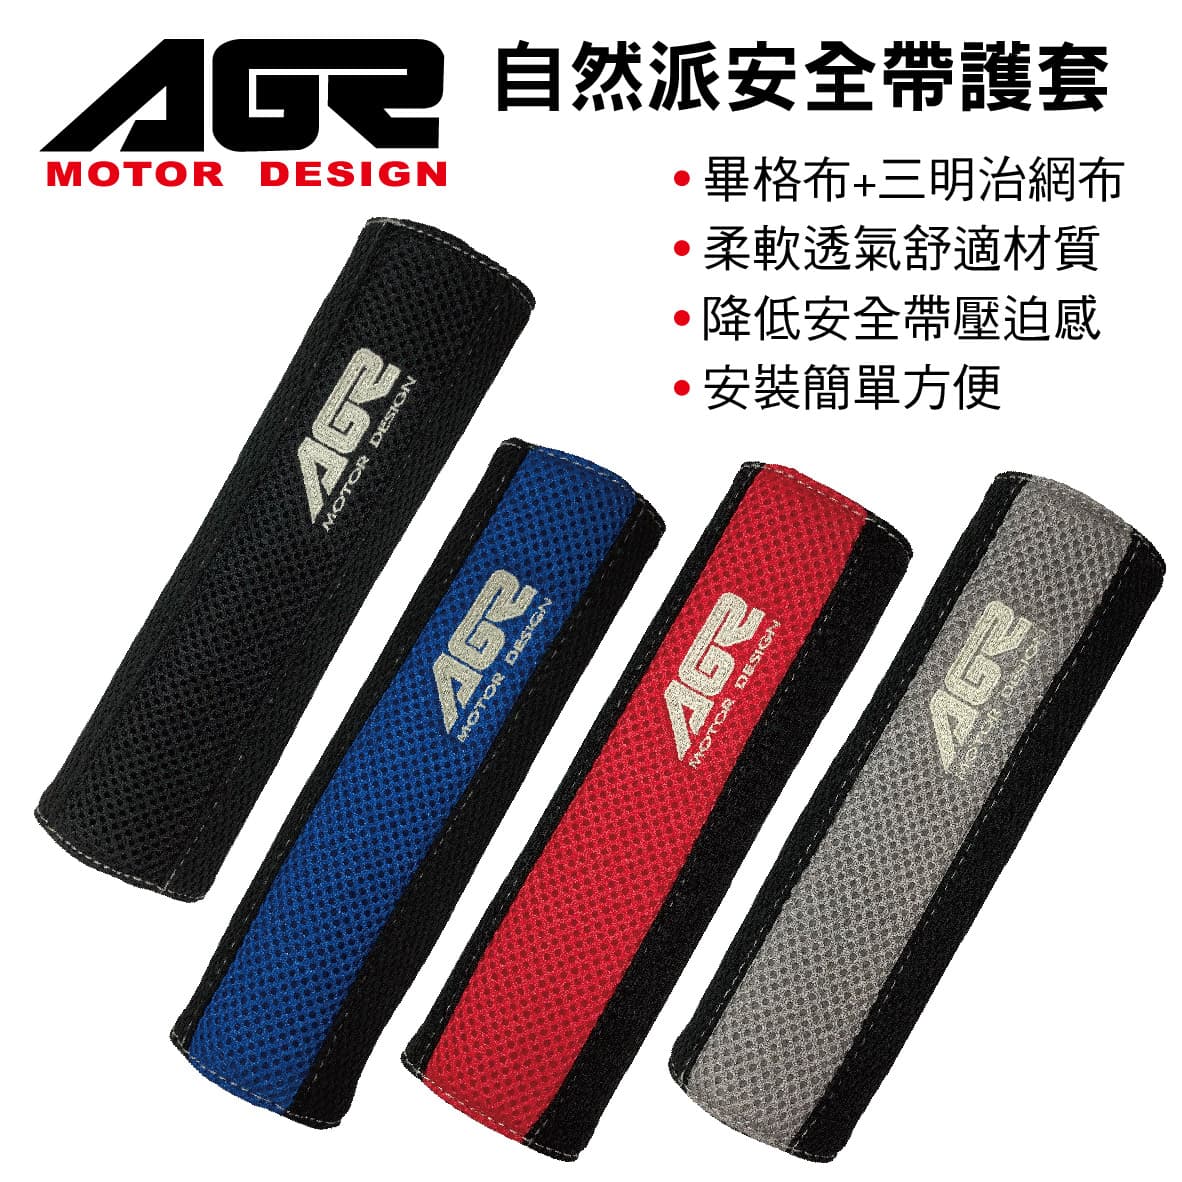 真便宜 AGR 自然派安全帶護套(2入)黑/藍/紅/灰